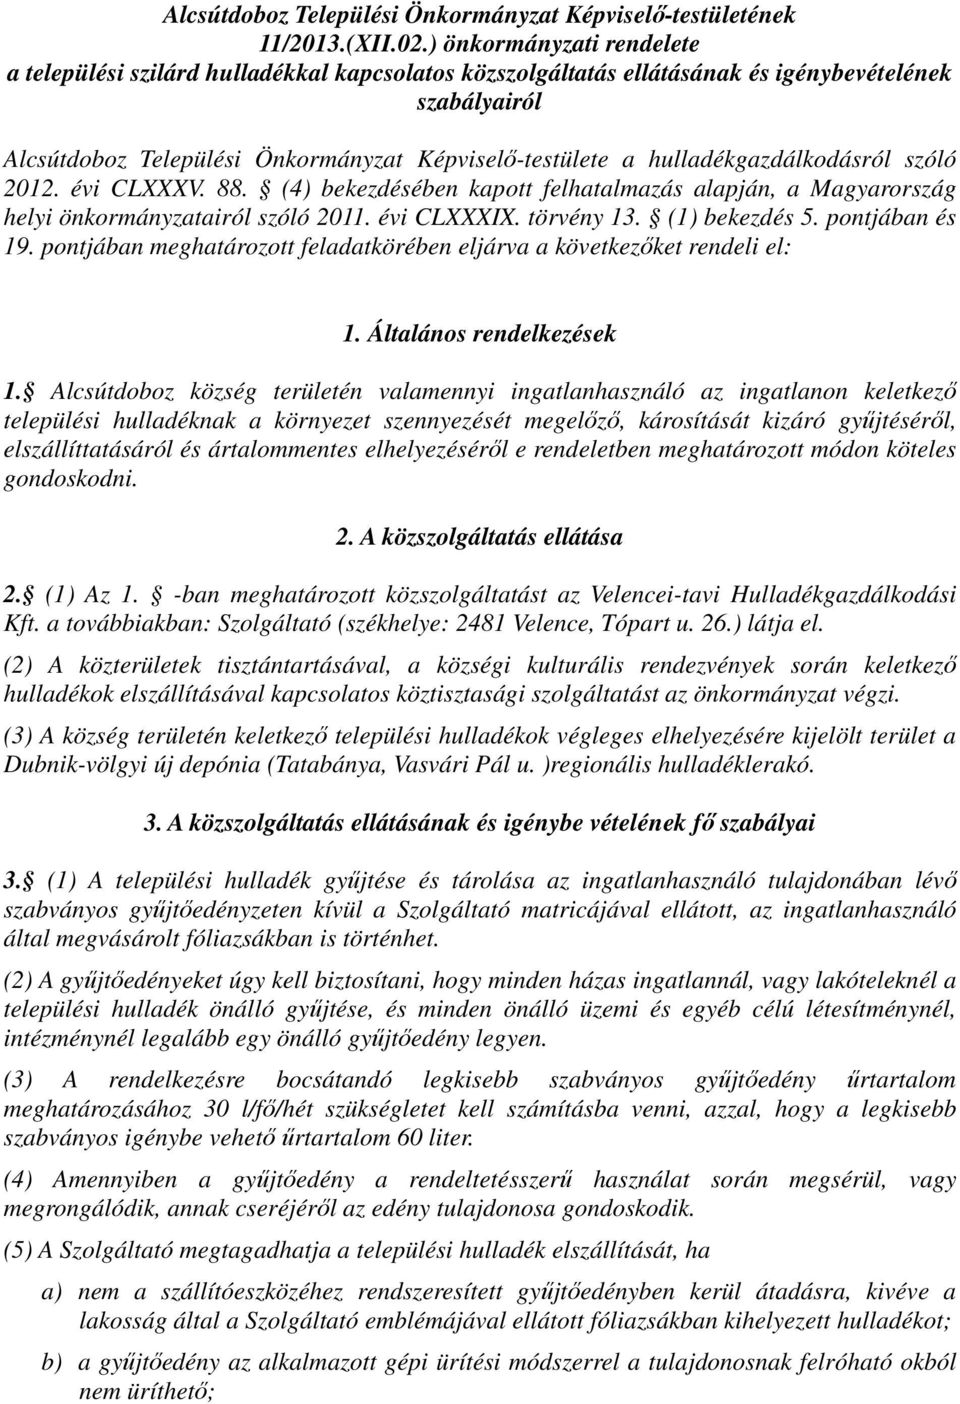 hulladékgazdálkodásról szóló 2012. évi CLXXXV. 88. (4) bekezdésében kapott felhatalmazás alapján, a Magyarország helyi önkormányzatairól szóló 2011. évi CLXXXIX. törvény 13. (1) bekezdés 5.